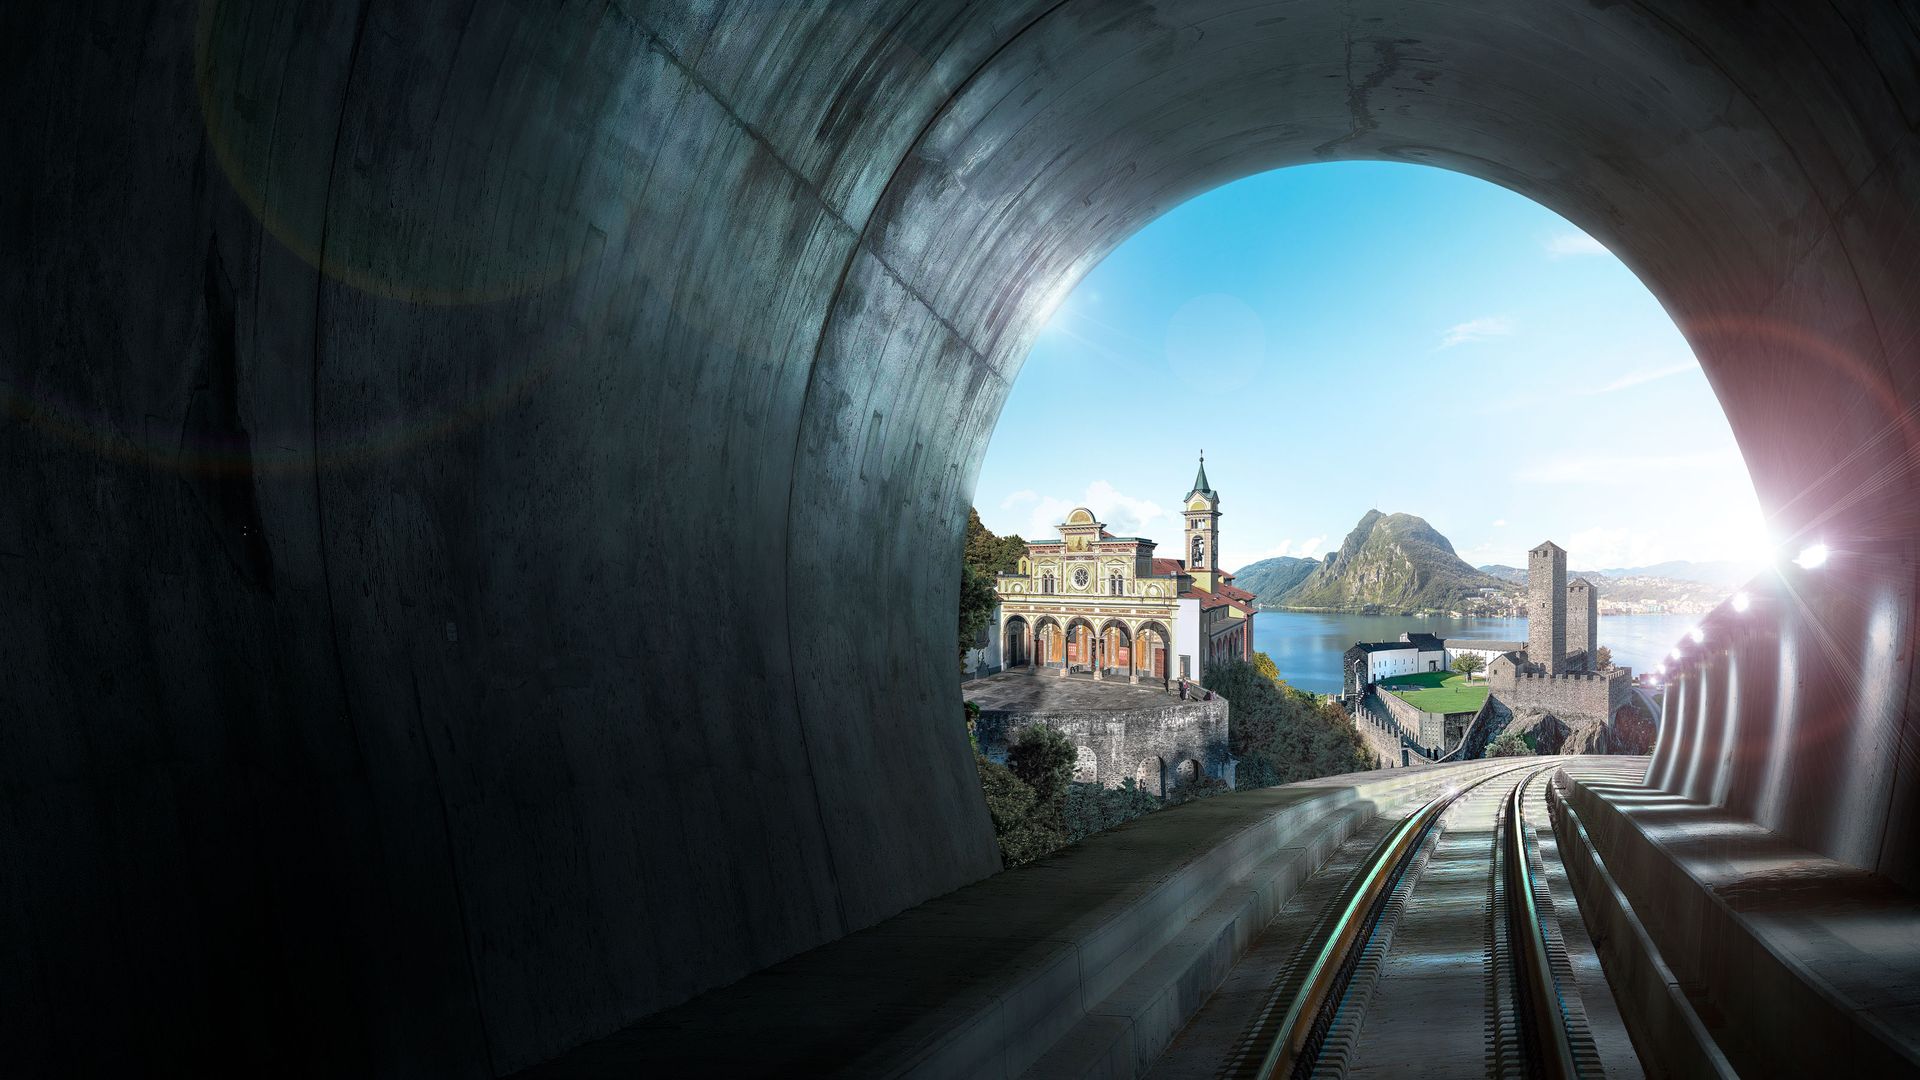 Ceneri-Basistunnel zwischen Lugano und Bellinzona